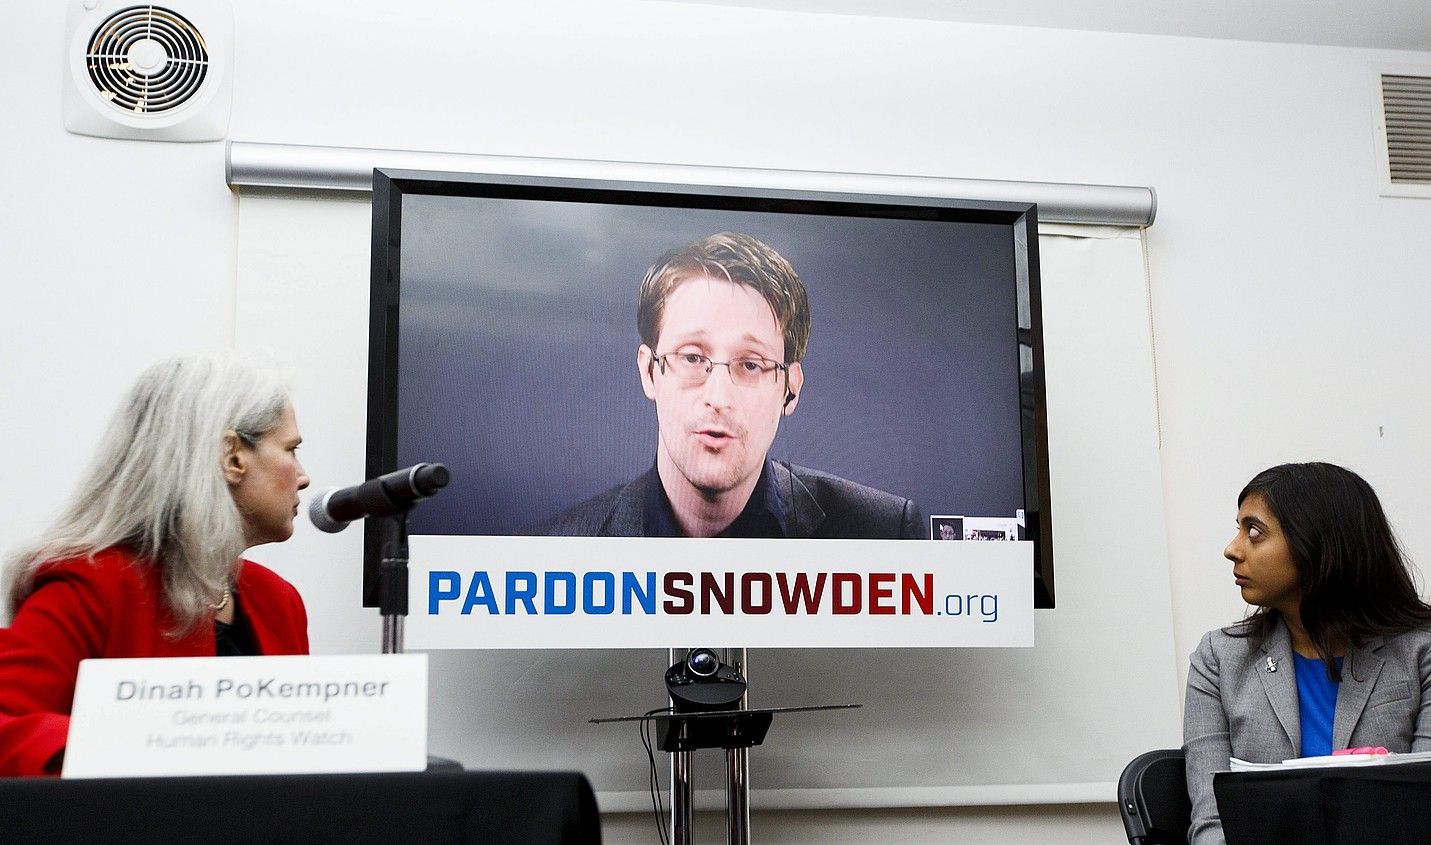 Snowden bideokonferentziaz Moskutik, New Yorken duela astebete eginiko prentsaurreko batean. JUSTIN LANE / EFE.